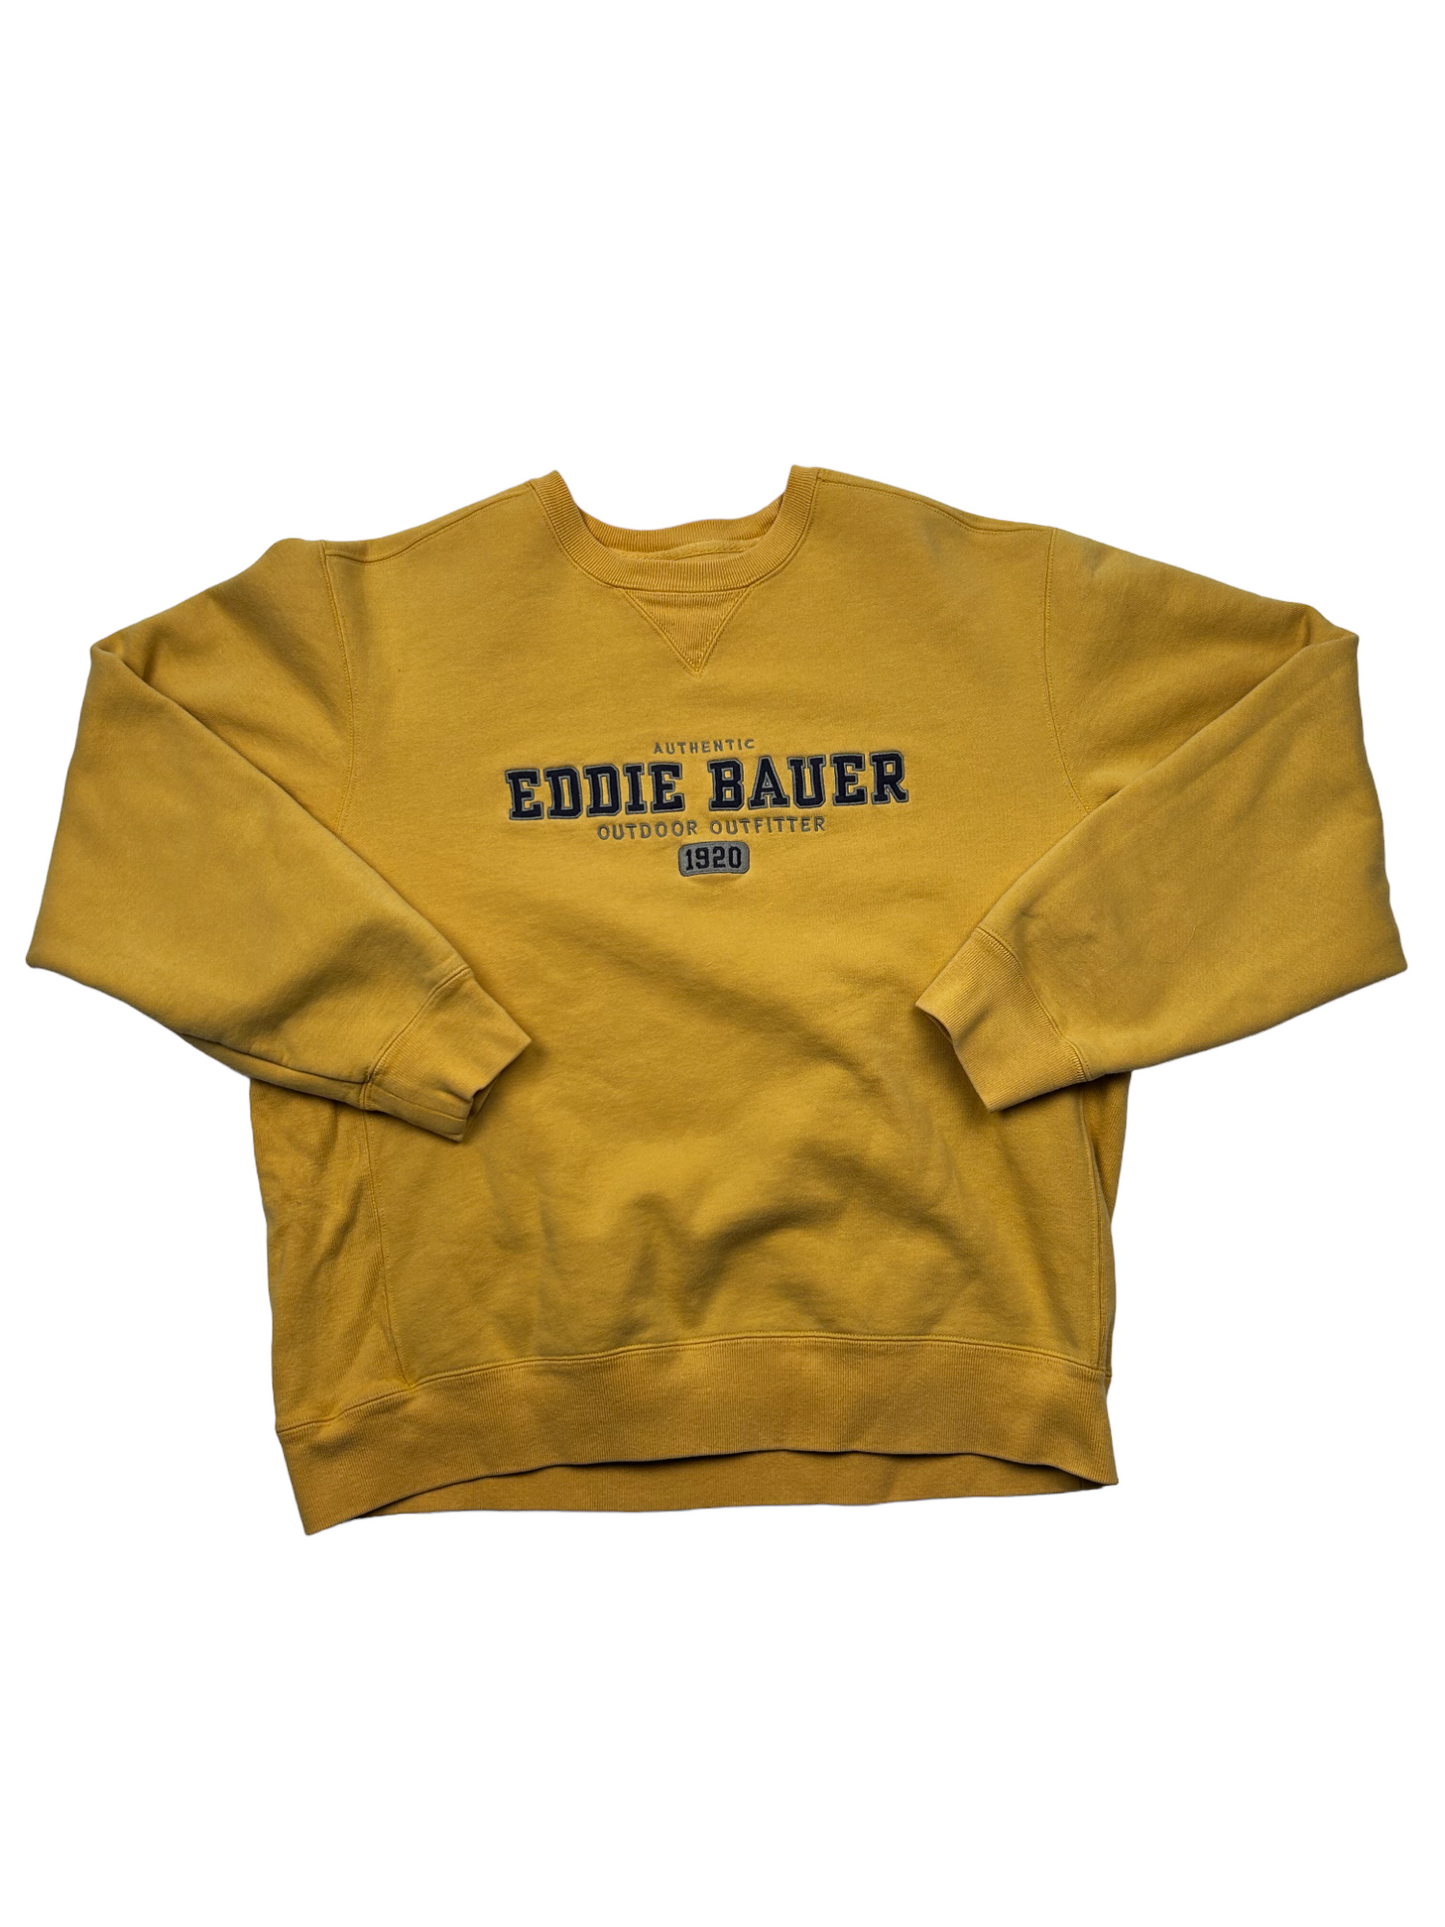 Eddie Bauer Yellow Crewneck